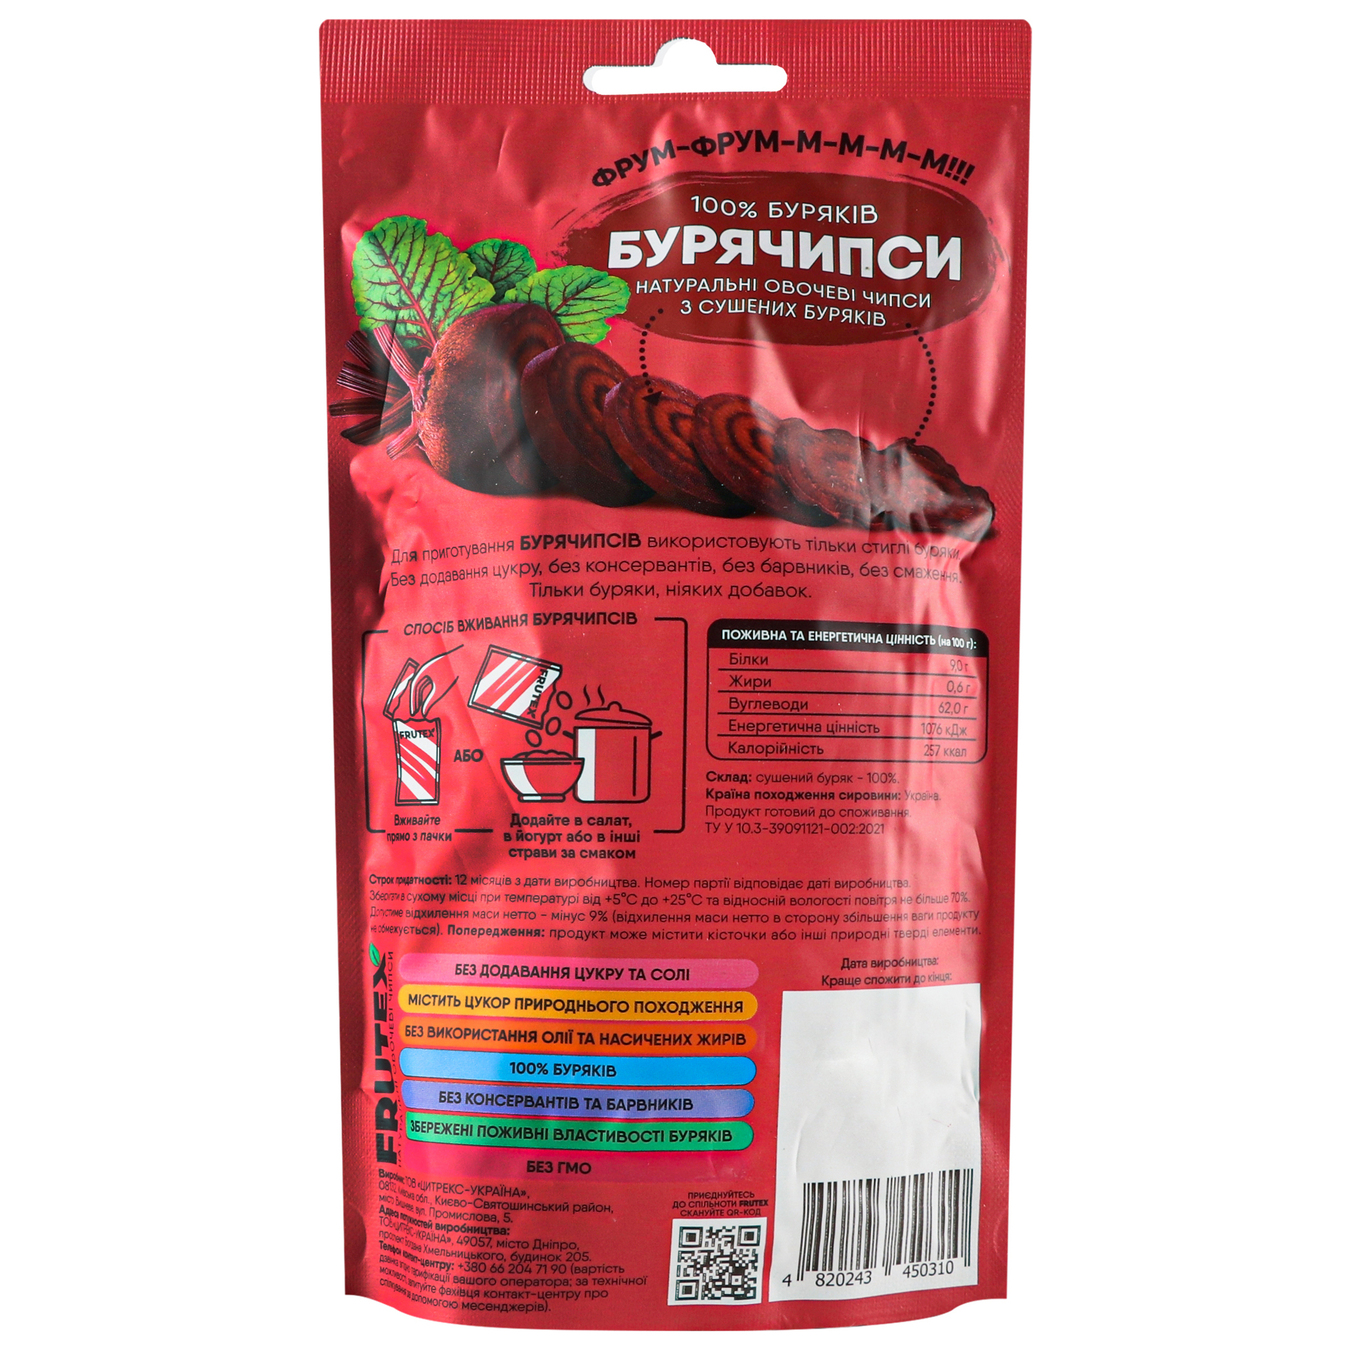 Vegetable chips Frutex Buryachichips 30g 2